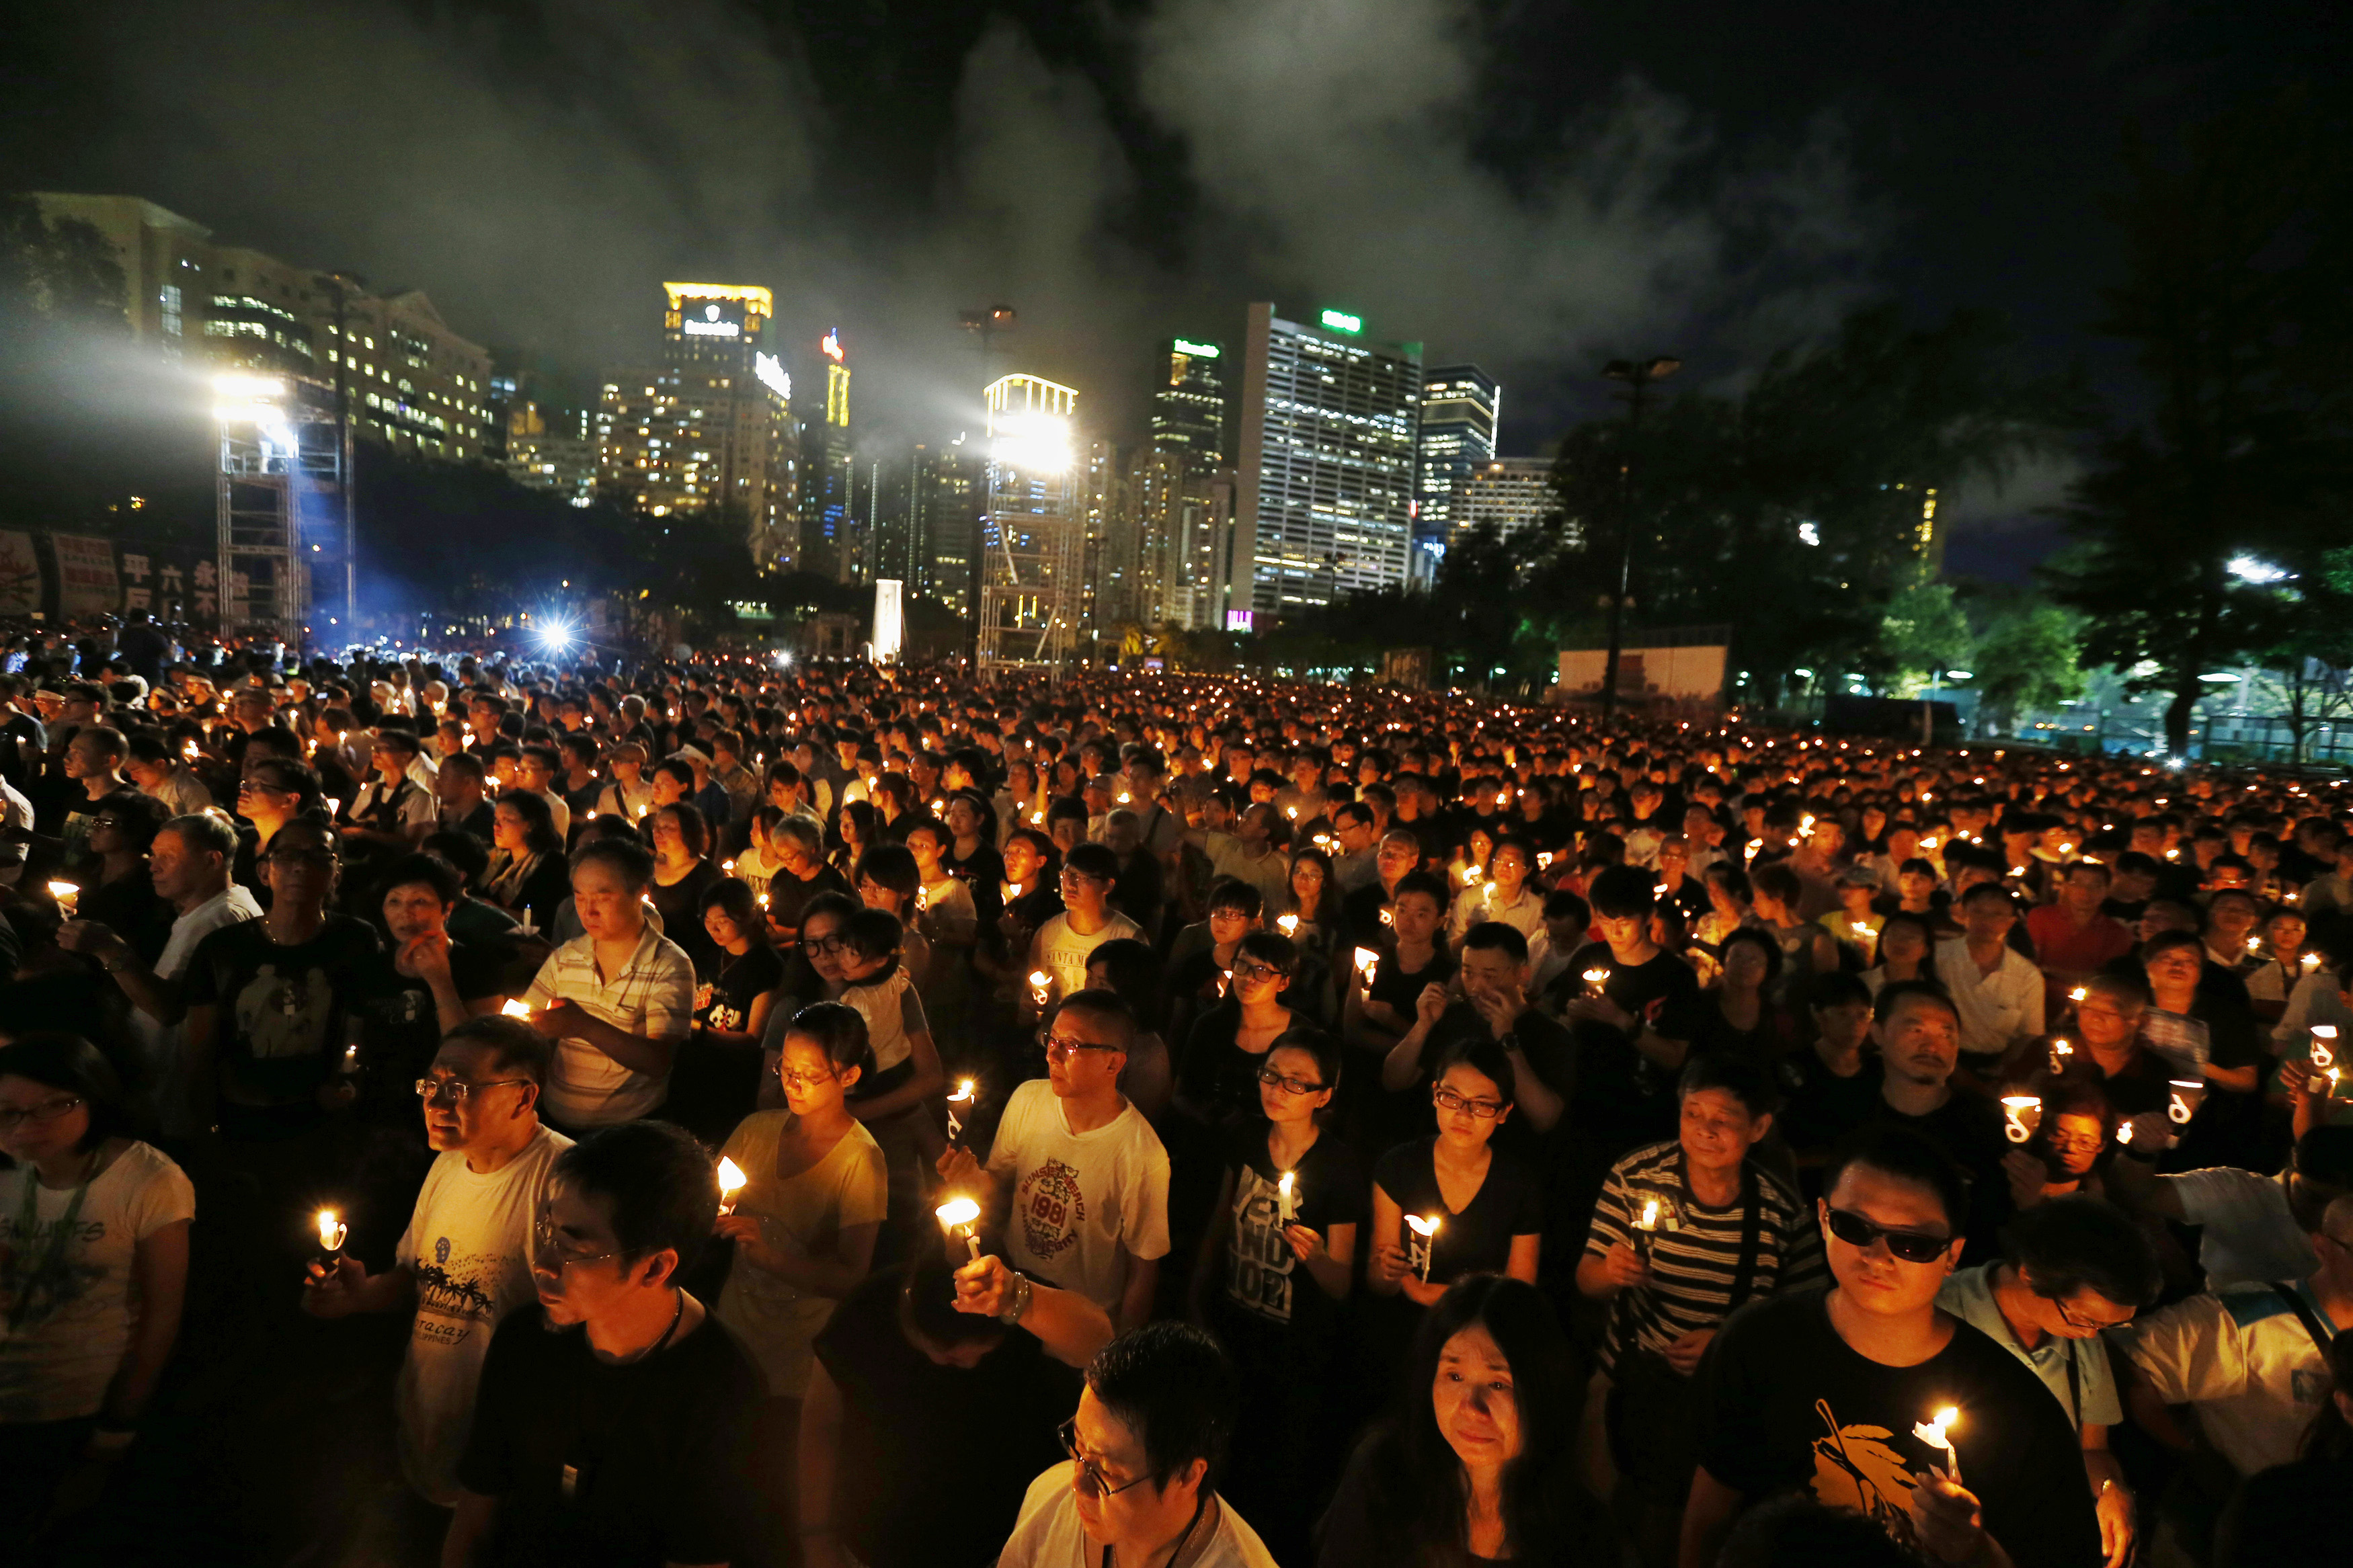 عشرات الاف الاشخاص يشاركون في مسيرة شموع في هونغ كونغ، فيكتوريا بارك بتاريخ 4 حزيران عام 2014، بمناسبة الذكرى الـ 25 للحملة العسكرية في بكين